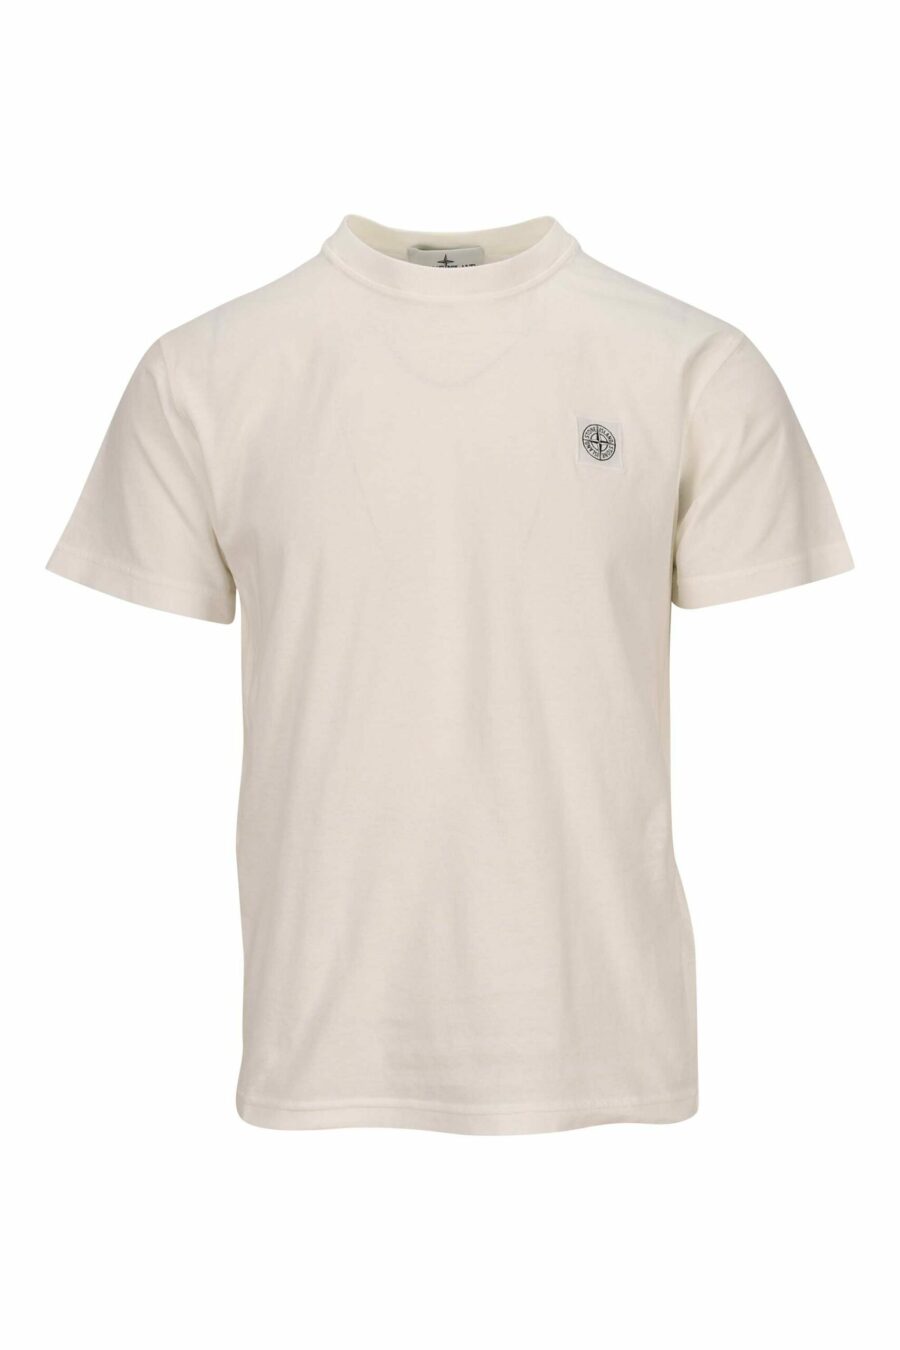 T-shirt blanc avec logo mini-boussole - 8052572902222 scaled